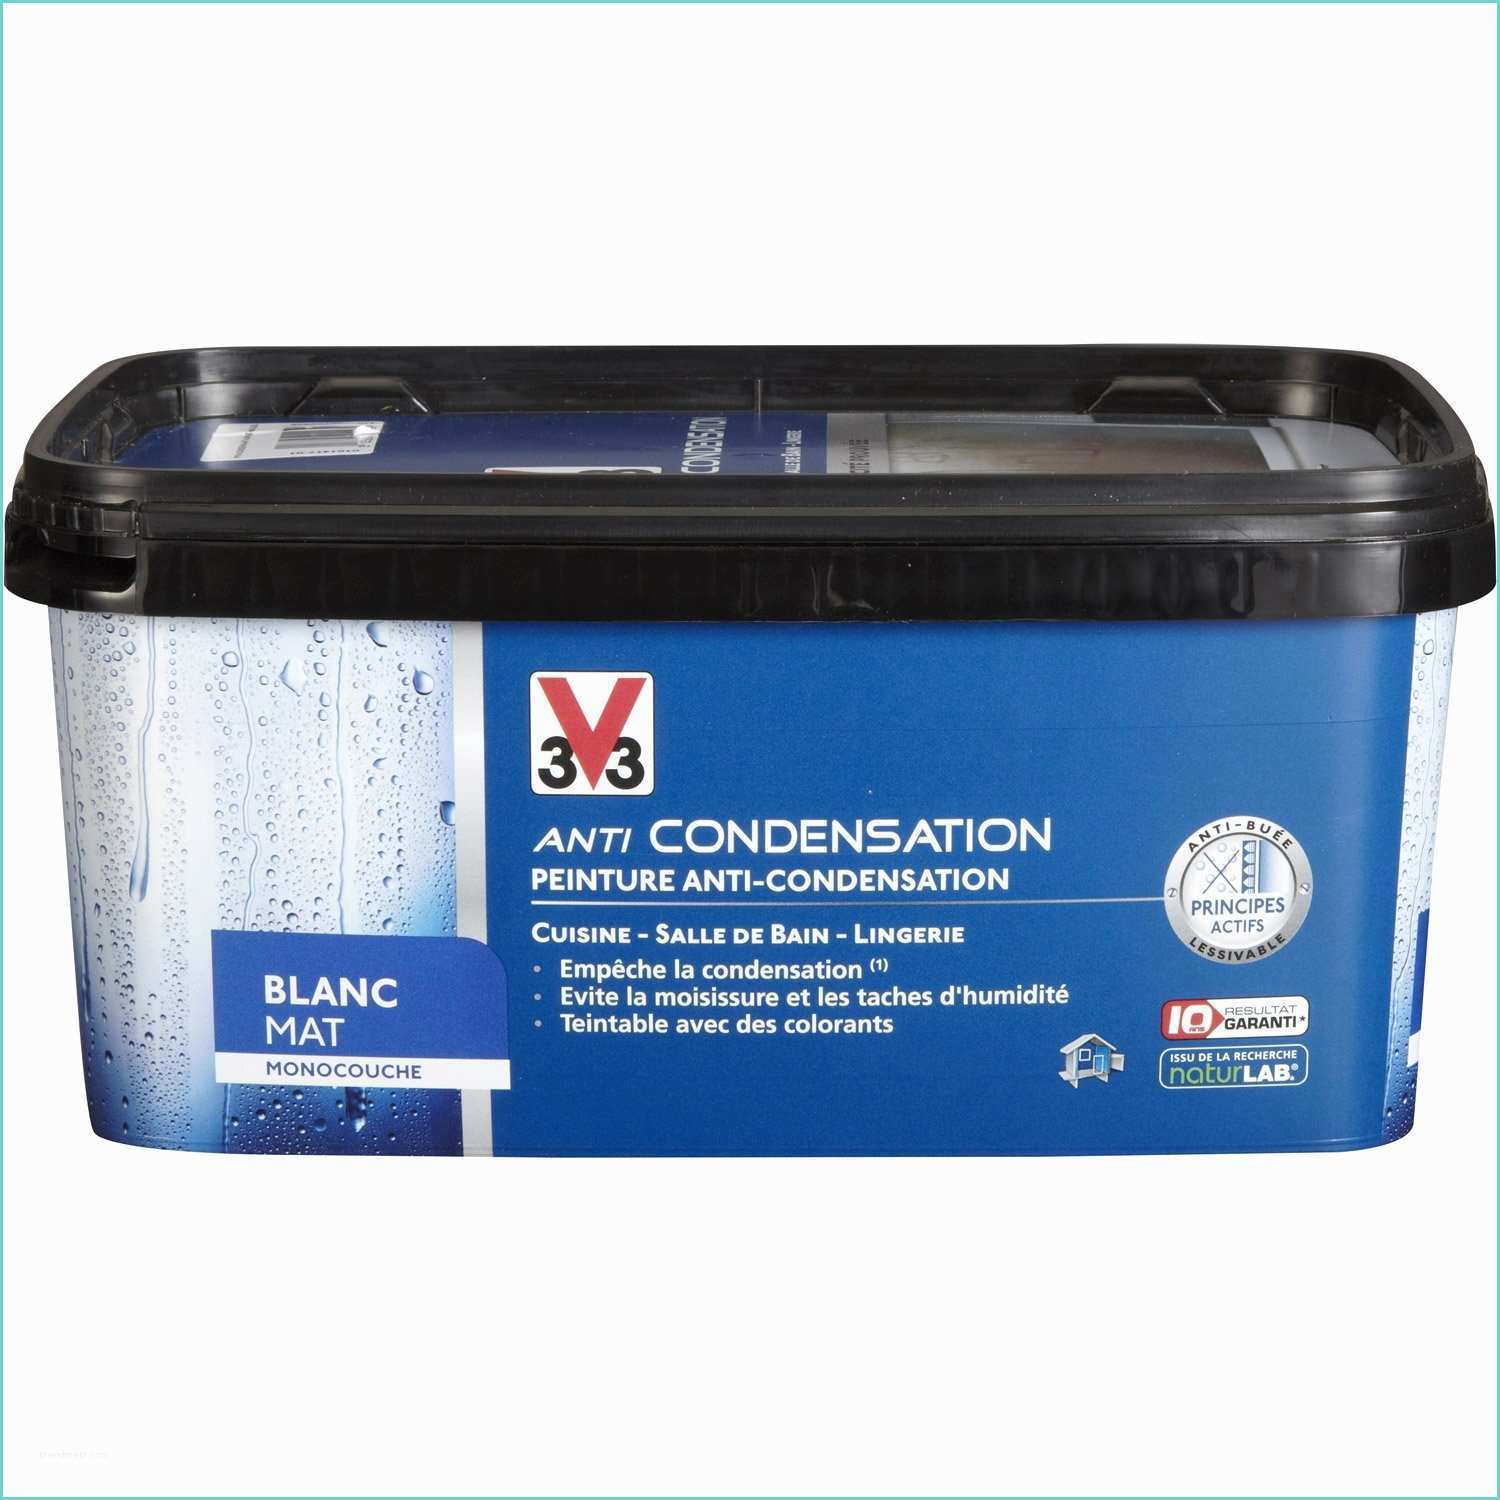 Dip Etanche Leroy Merlin Peinture Anti Condensation V33 – Resine De Protection Pour